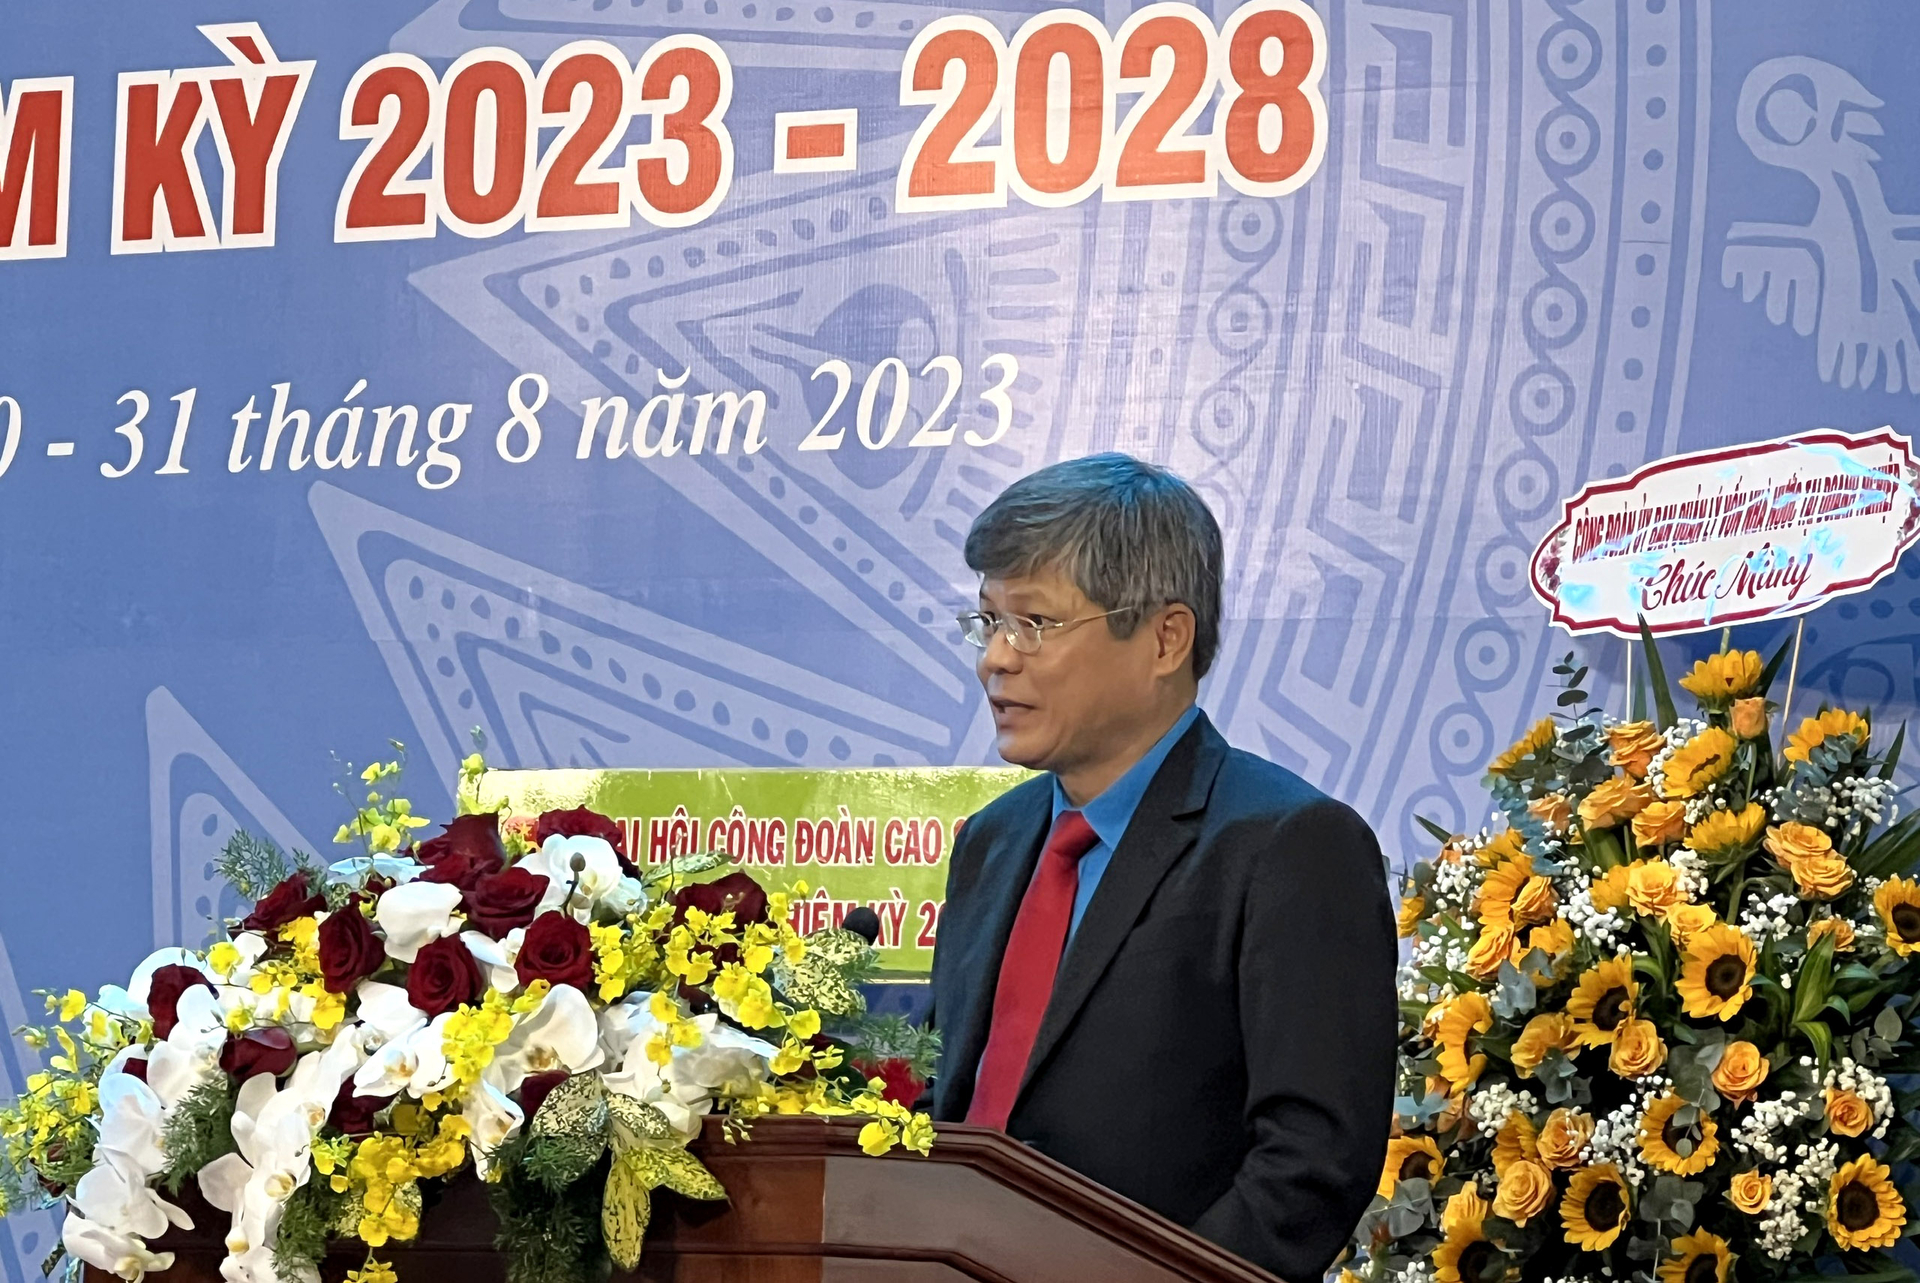 Ông Trần Công Kha, Chủ tịch HĐQT VRG khẳng định những kết quả đáng tự hào của Tập đoàn có sự đóng góp quan trọng của công đoàn cao su các cấp.